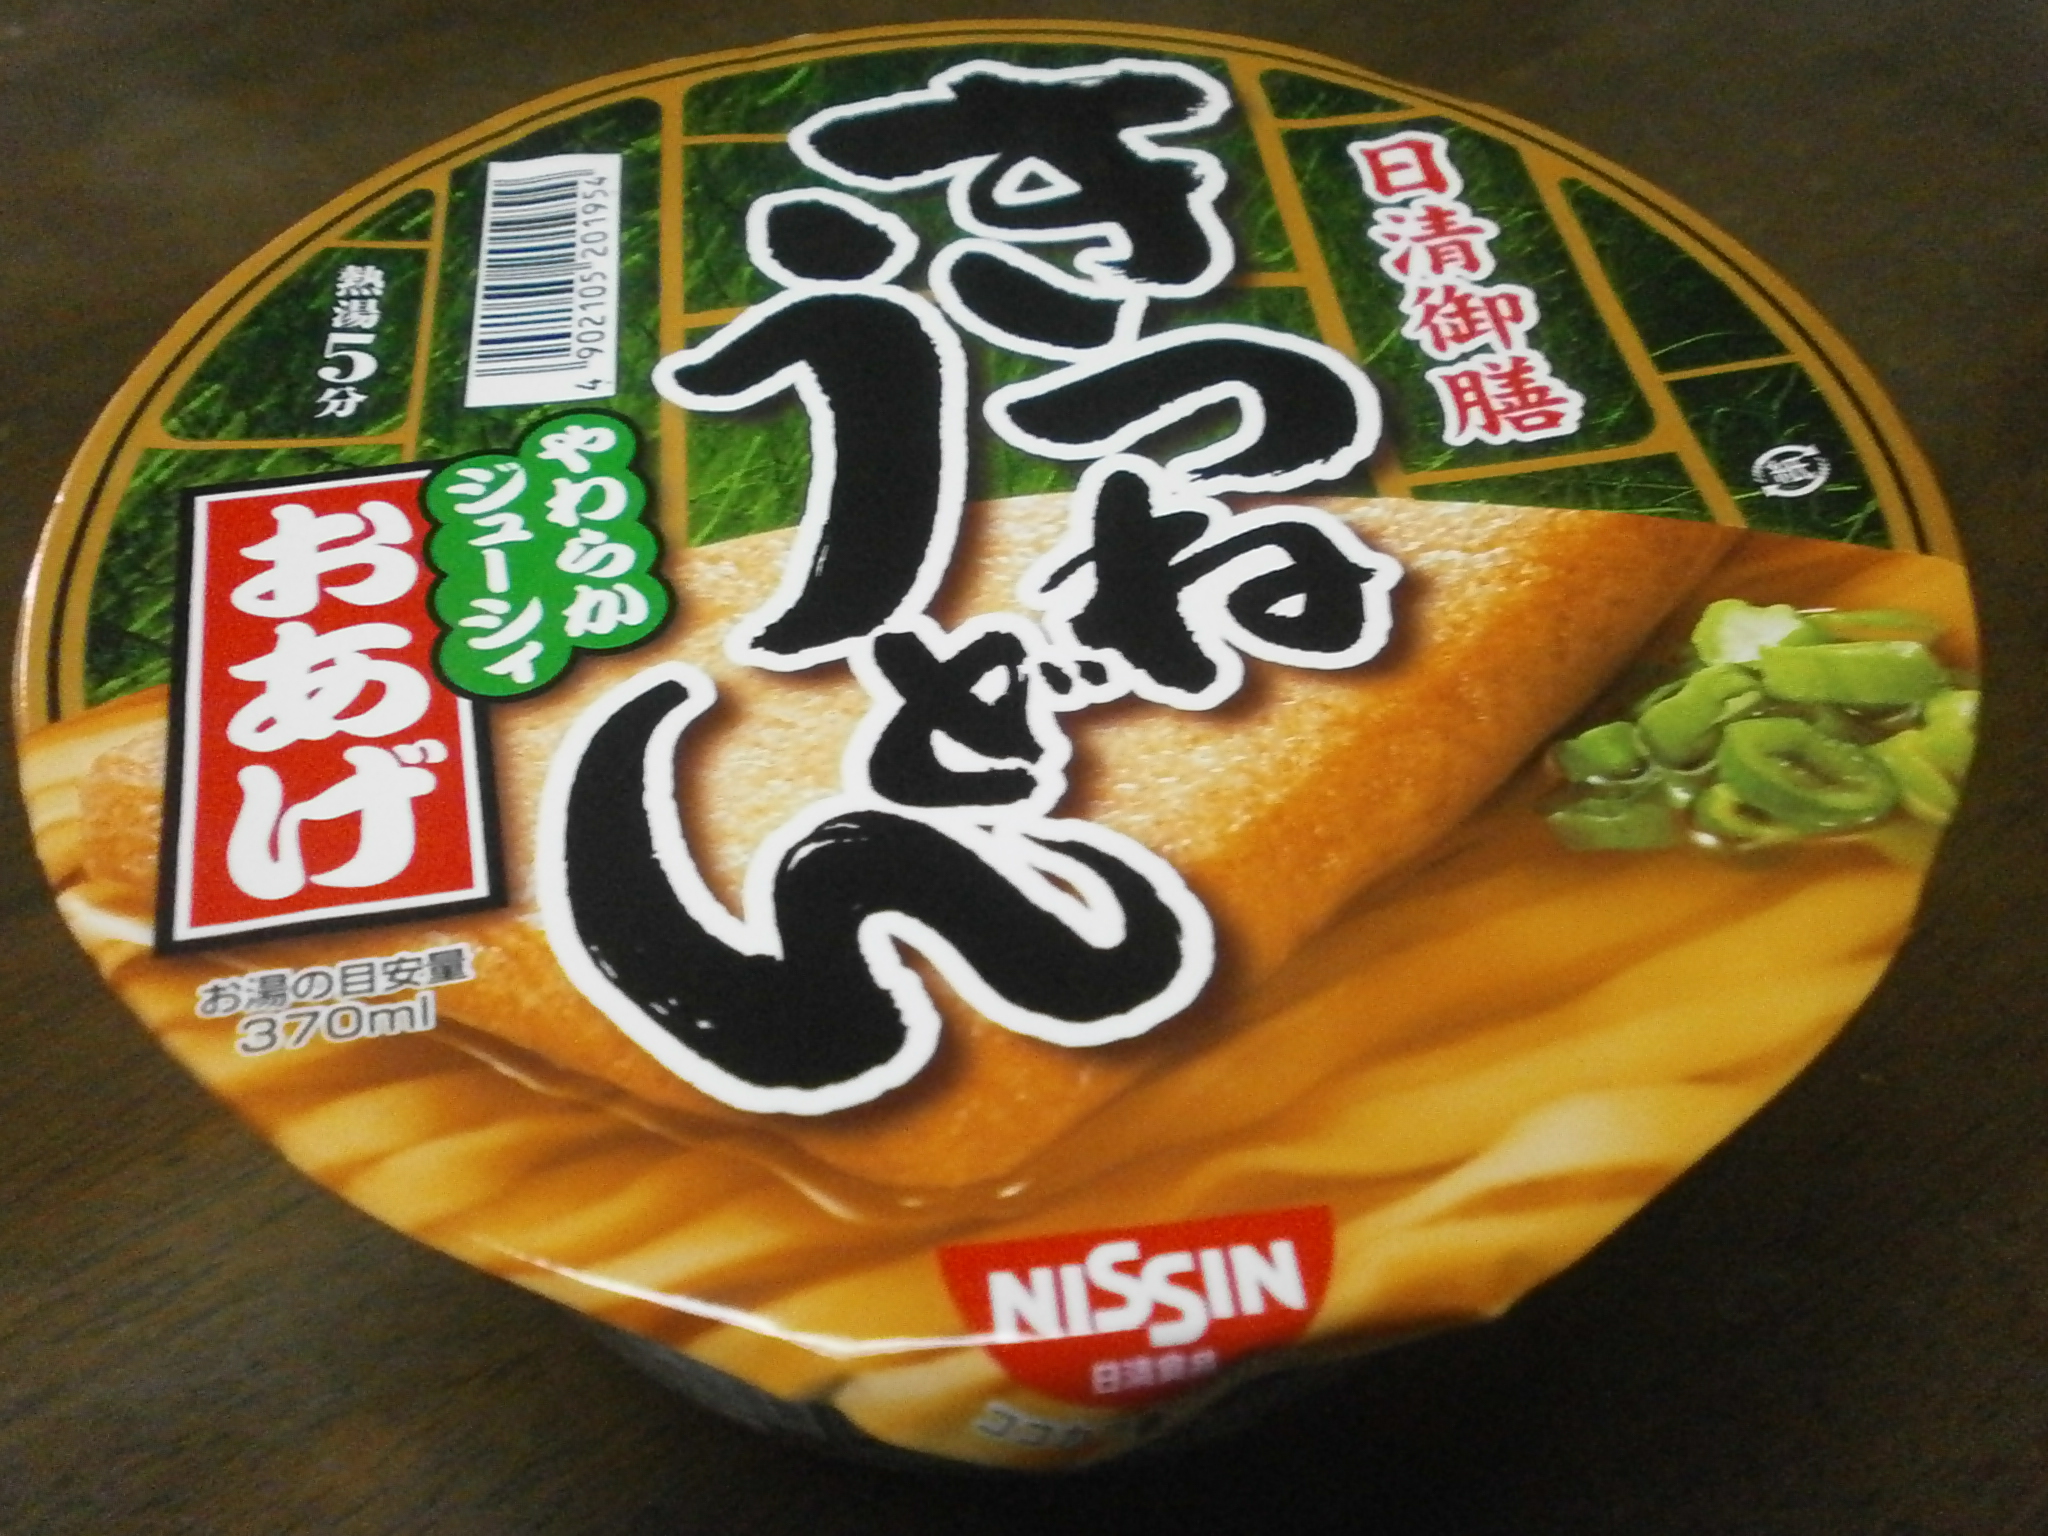 Which high-calorie? Noodle soup? Kitsune udon?